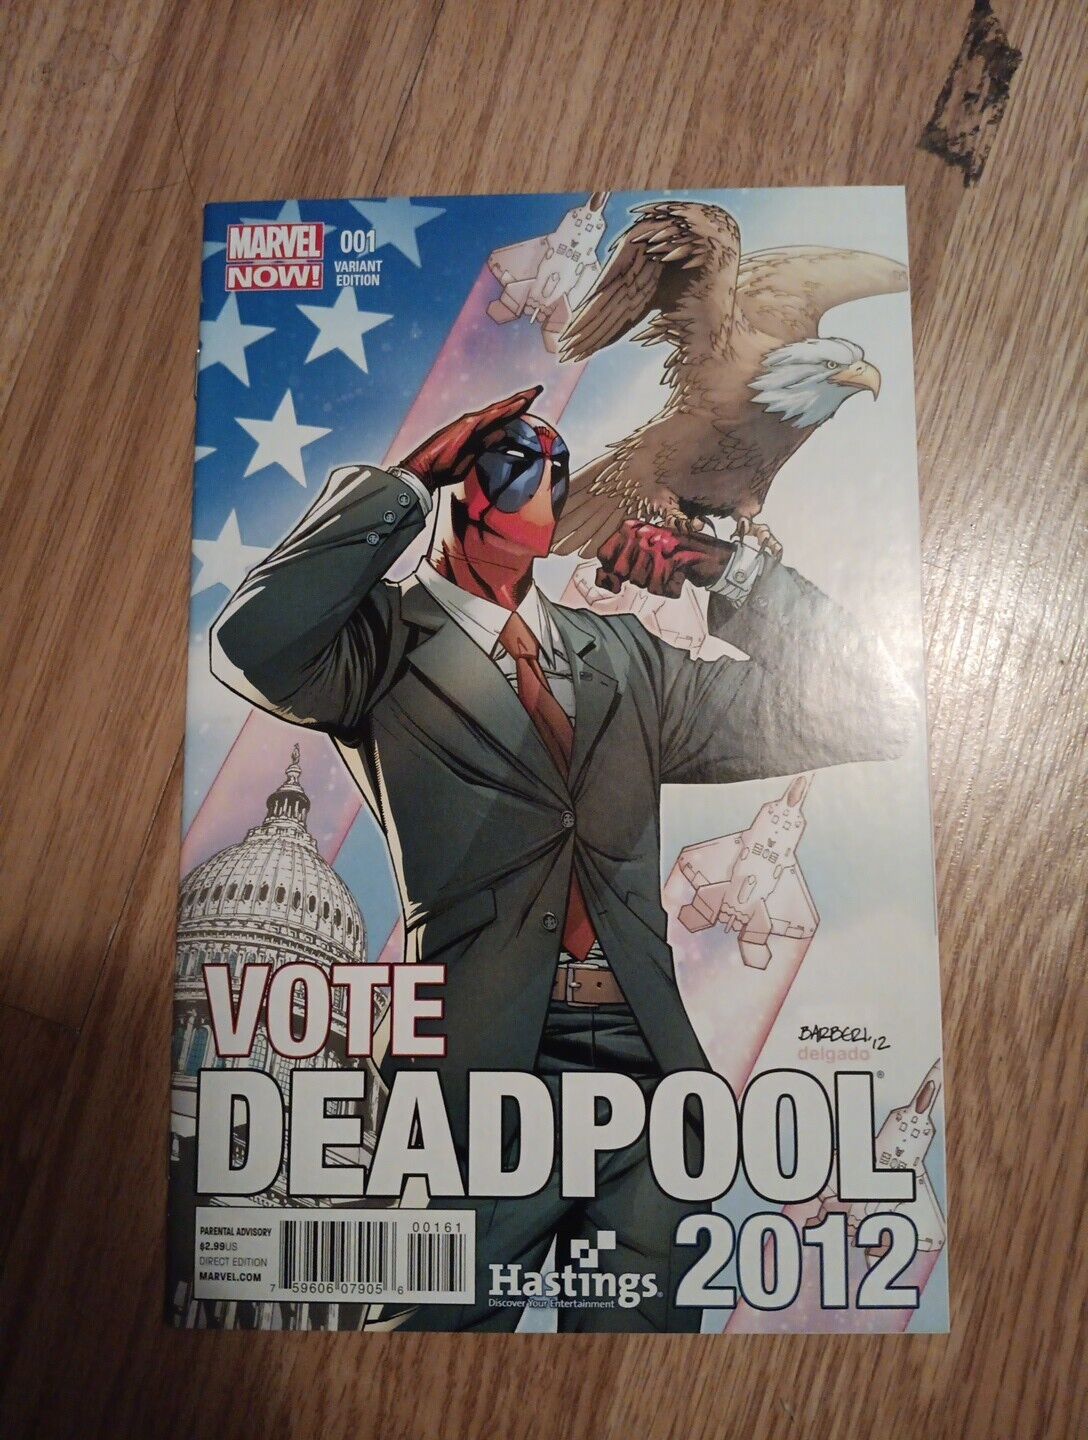 DEADPOOL #1 (2012) HTF Vote Deadpool Hastings Variant